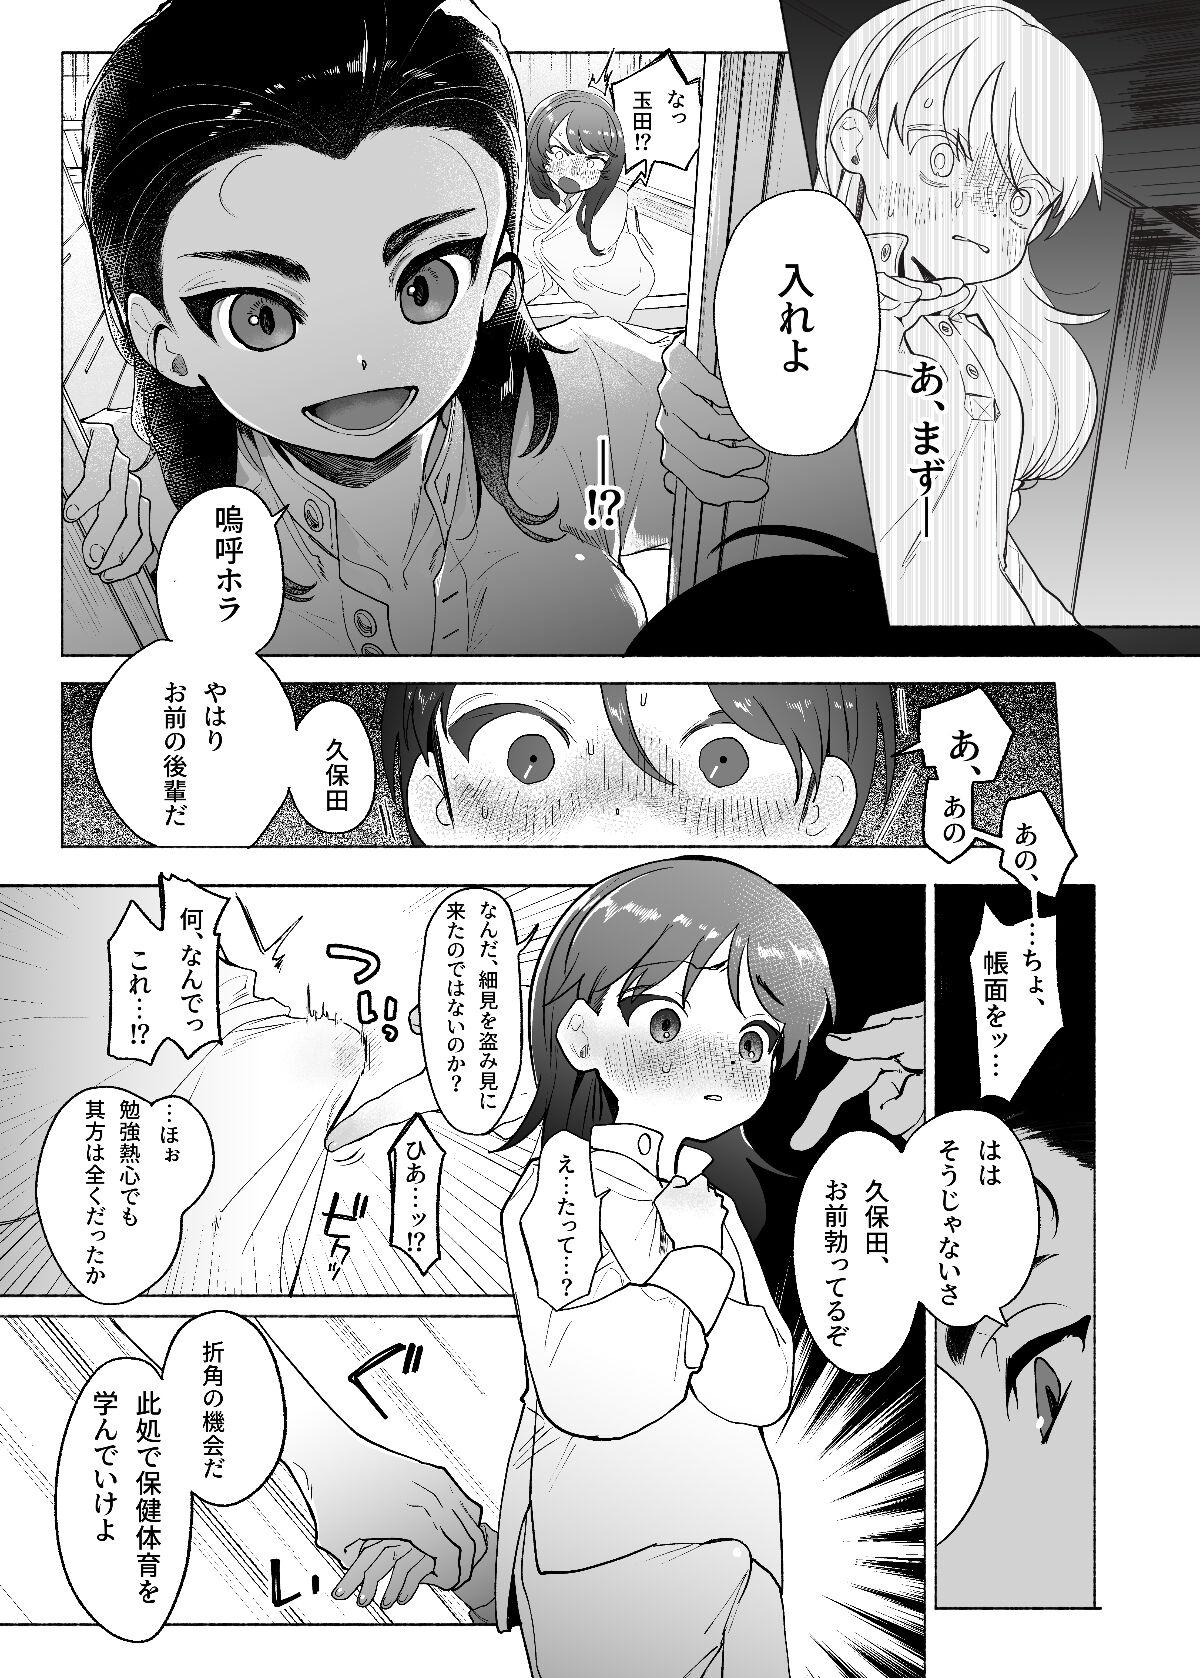 Nurugel Ah, Watashi no Senpai Dono - Girls und panzer Striptease - Page 8